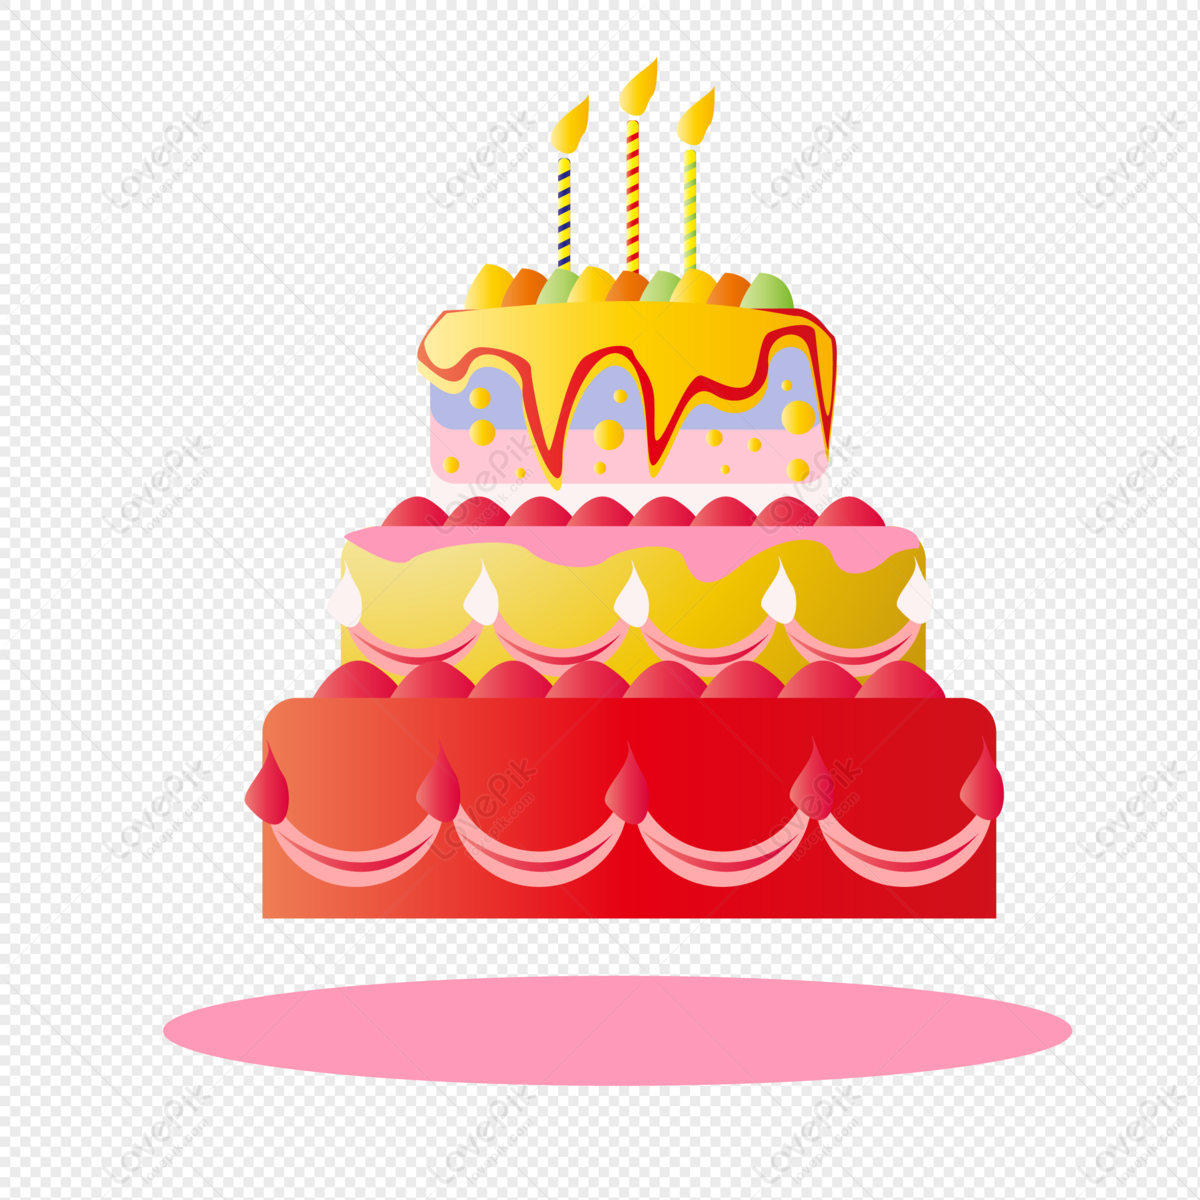 Hình ảnh bánh sinh nhật đẹp mắt, tươi mới, sống động sẽ khiến bạn không thể rời mắt. Tìm kiếm hình ảnh cake PNG hợp ý tưởng dành cho bạn.